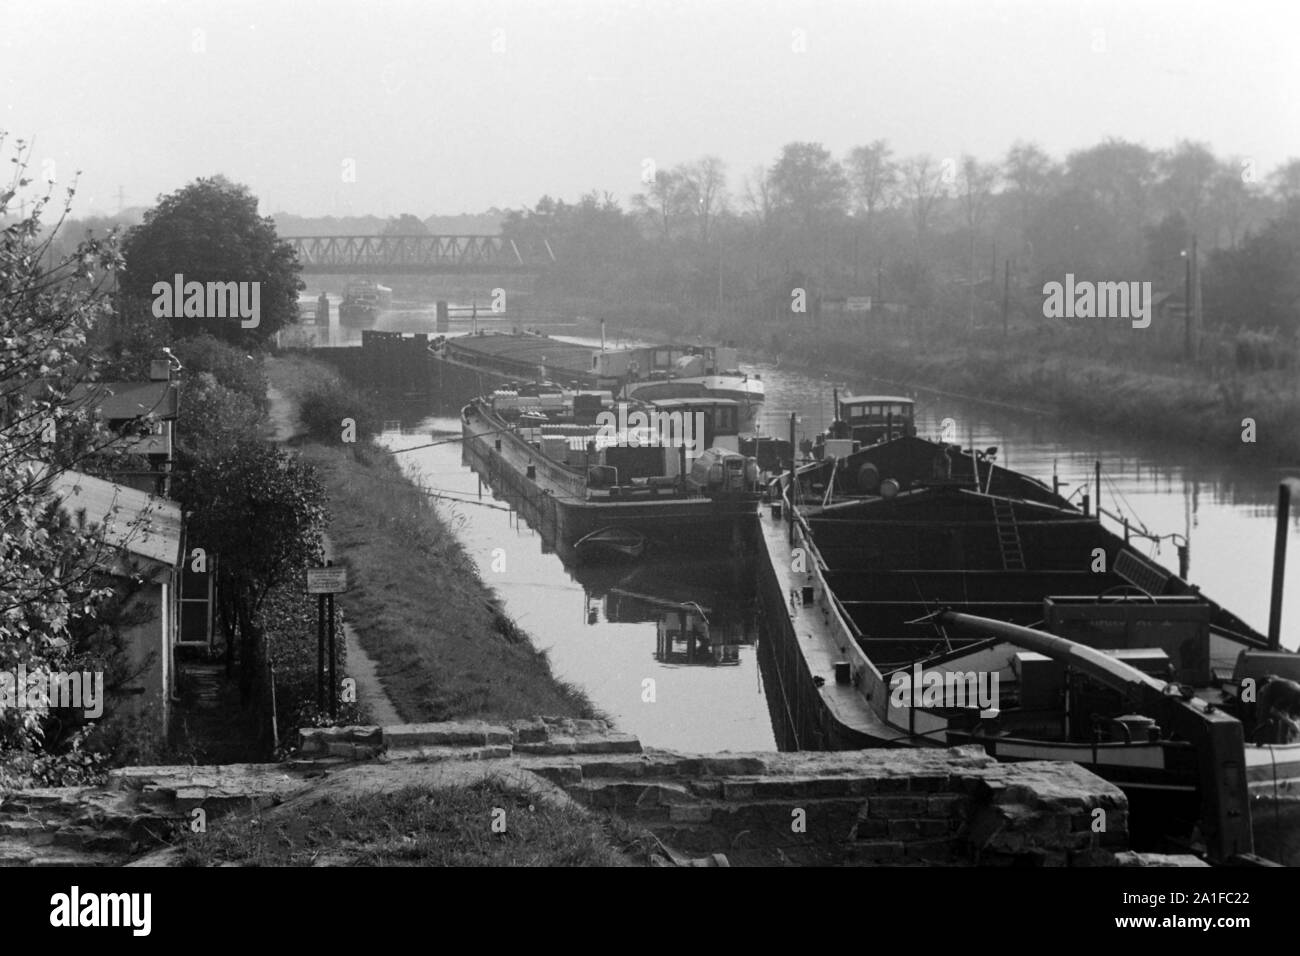 Schlepper und Kähne in einem Kanal um Berlin, Deutschland 1962. Tugboats and barges in a canal around Berlin, Germany 1962. Stock Photo